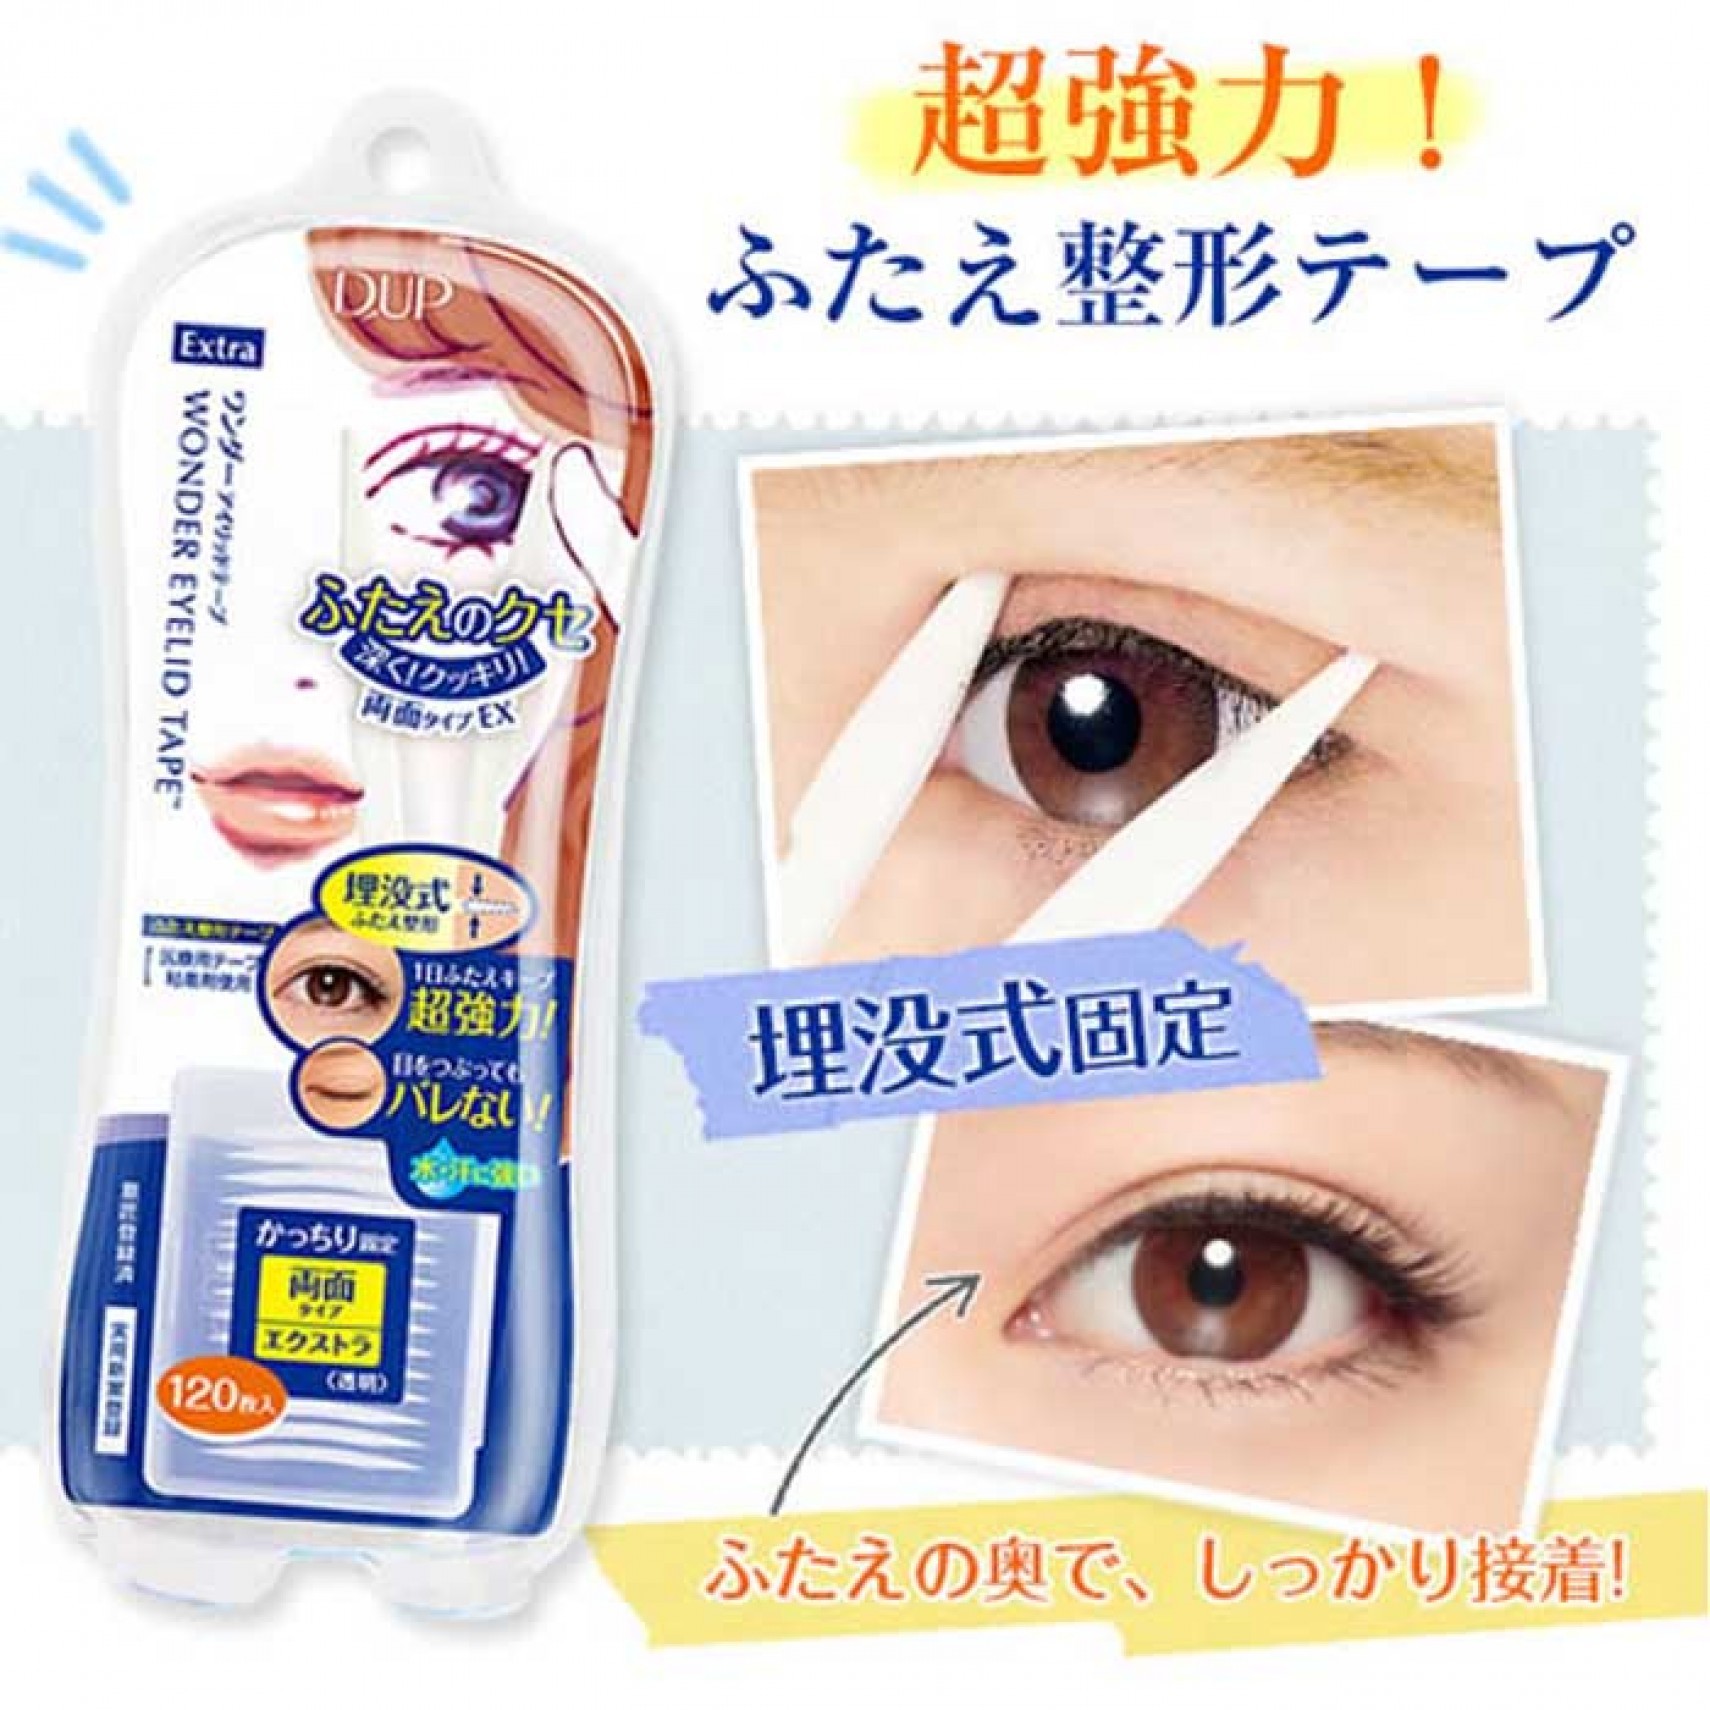 double eyelid tape